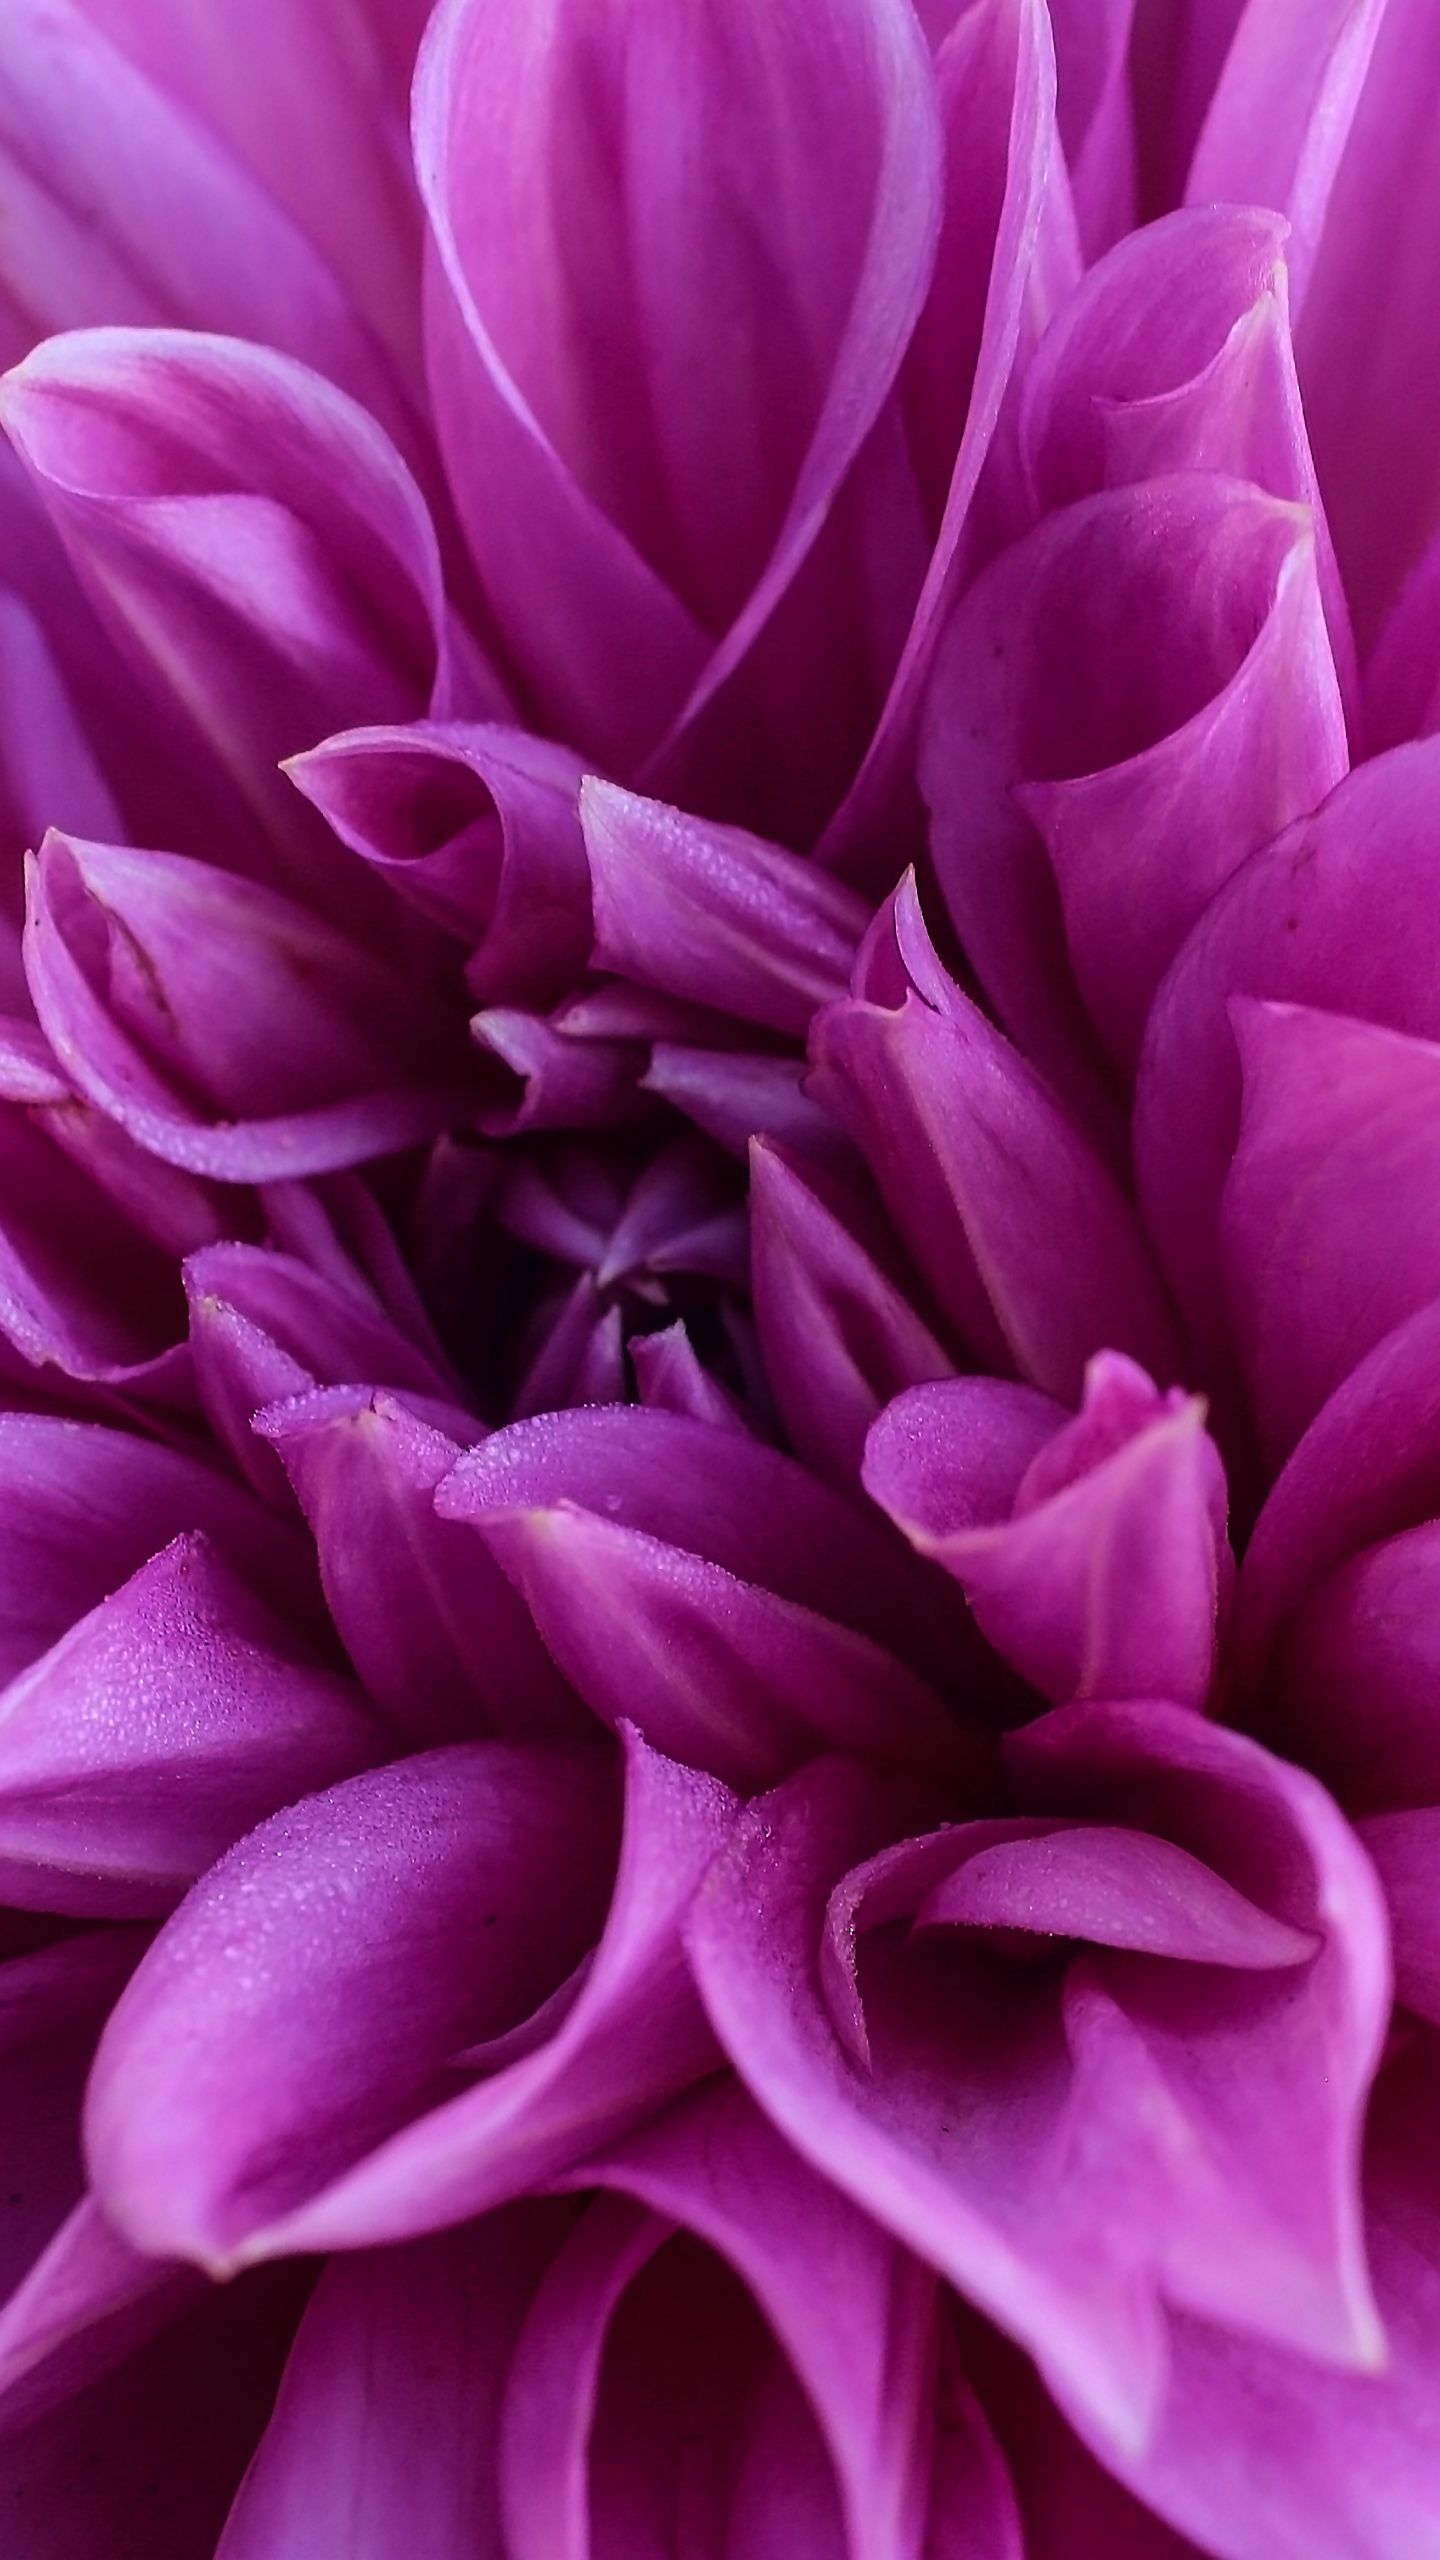 Những loài hoa đại lý hương rực rỡ của Dahlia đã trở thành một biểu tượng của vẻ đẹp và sự rực rỡ. Hình ảnh của những đóa hoa Dahlia sẽ làm cho bạn đắm chìm trong sự tươi mới và sức sống được lan tỏa từ chúng.